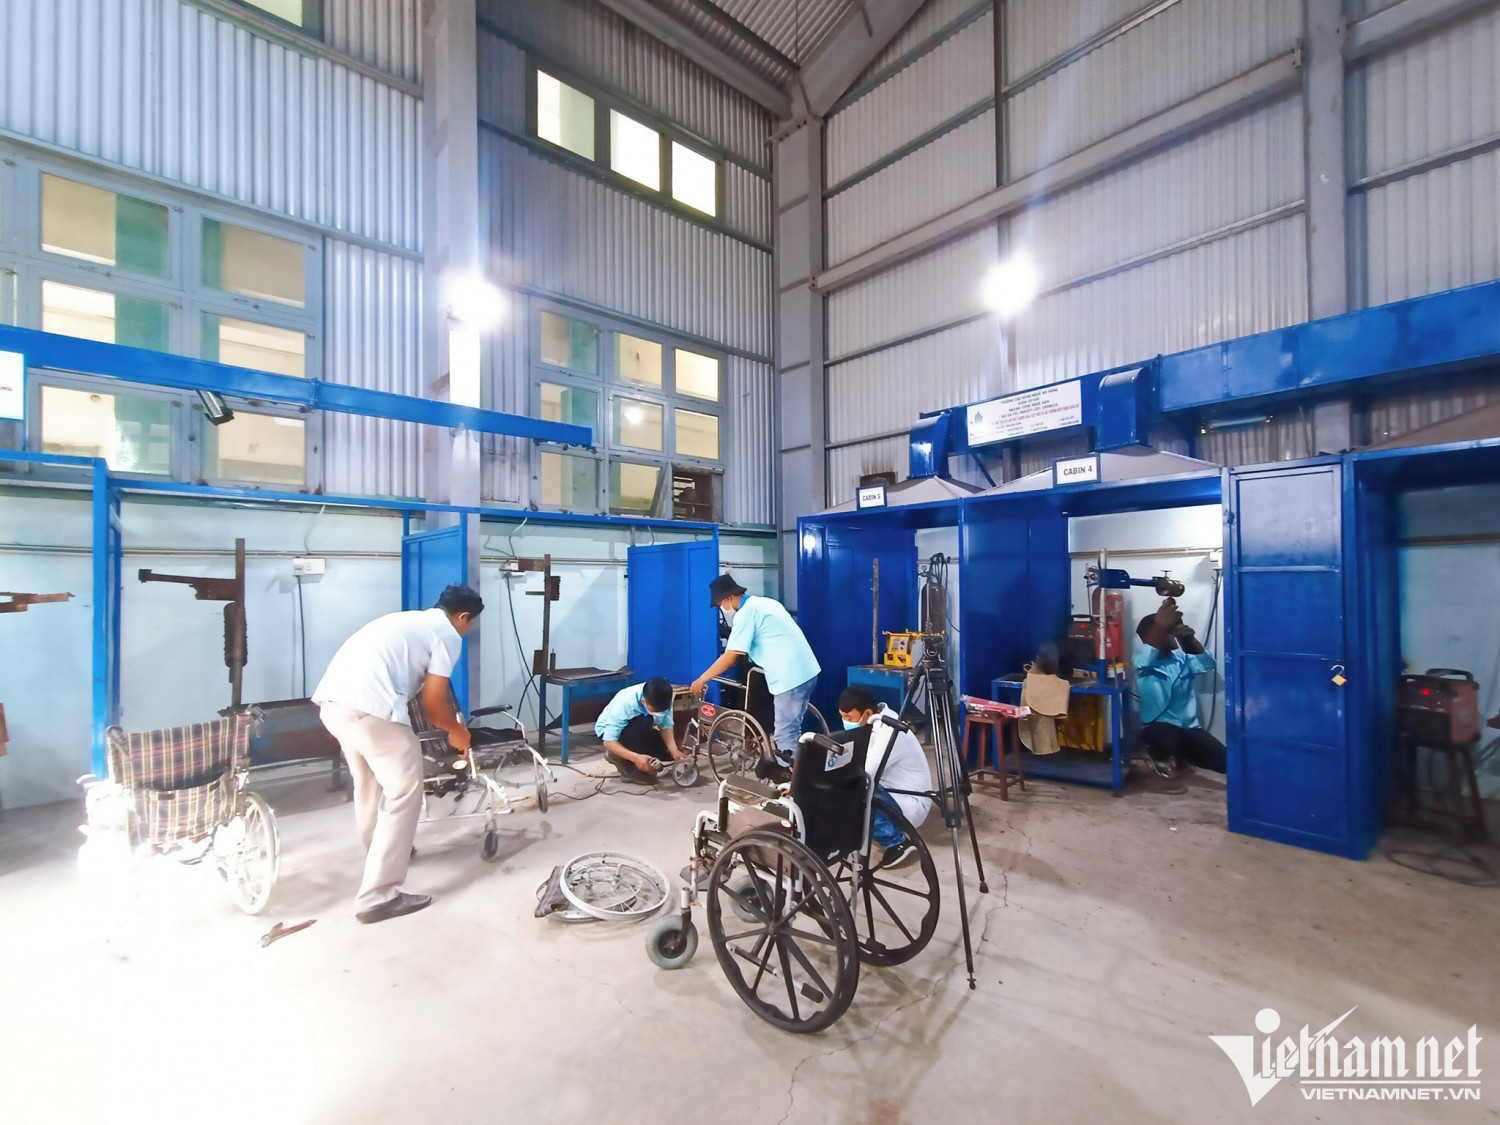 “Xưởng sửa xe” đặc biệt giúp người khuyết tật tại trường Cao đẳng nghề Đà Nẵng.